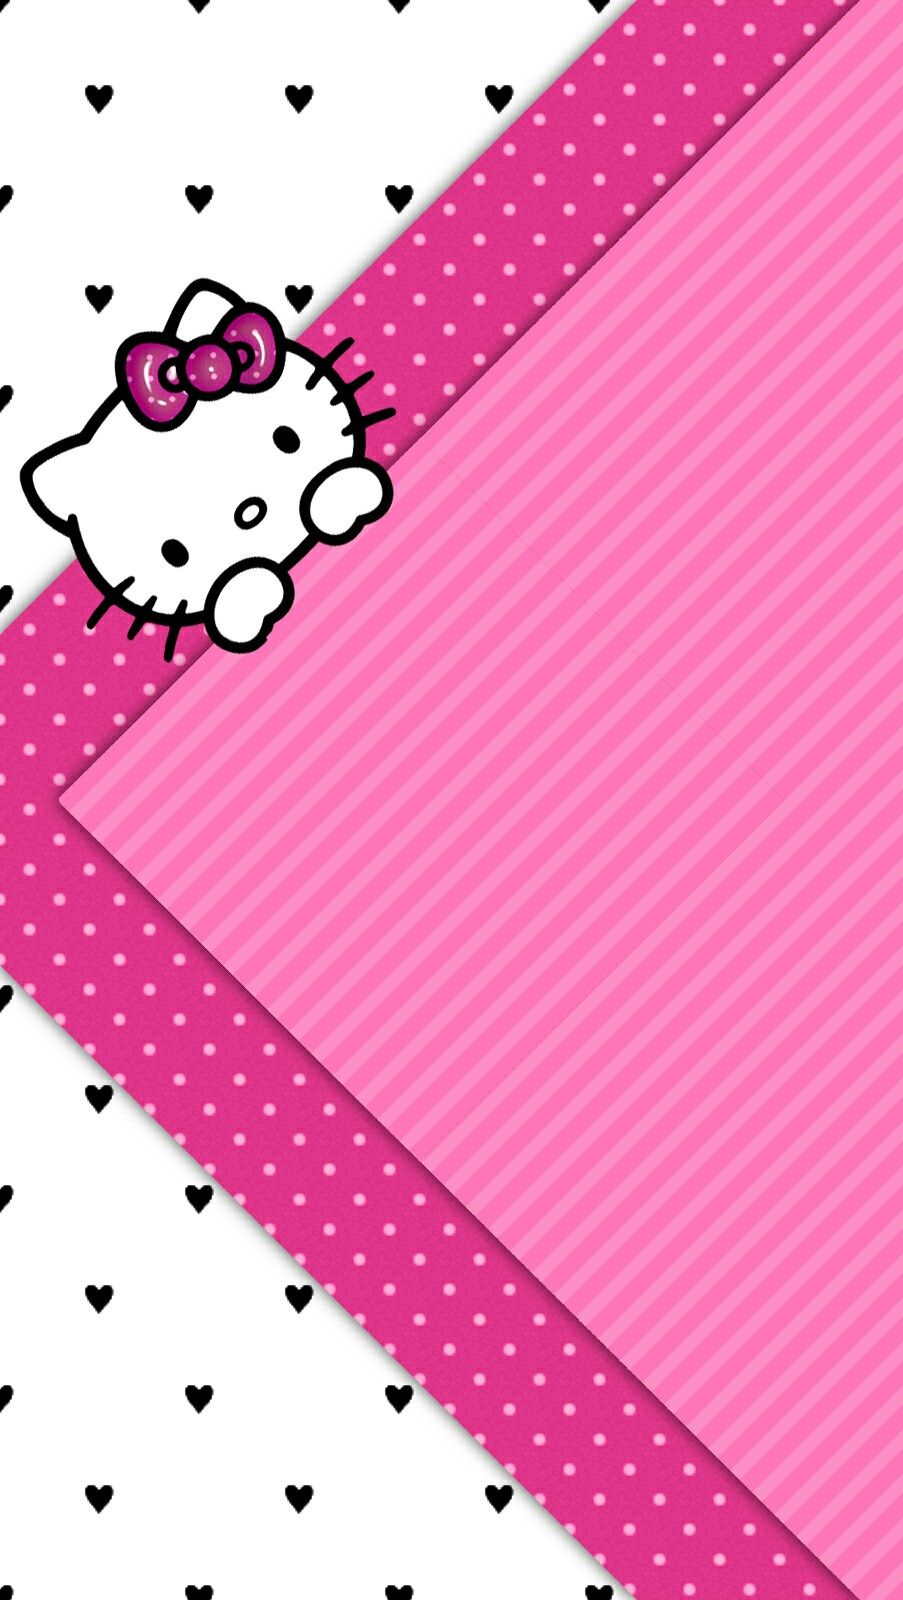 ハローキティの携帯壁紙,ピンク,パターン,ライン,設計,水玉模様